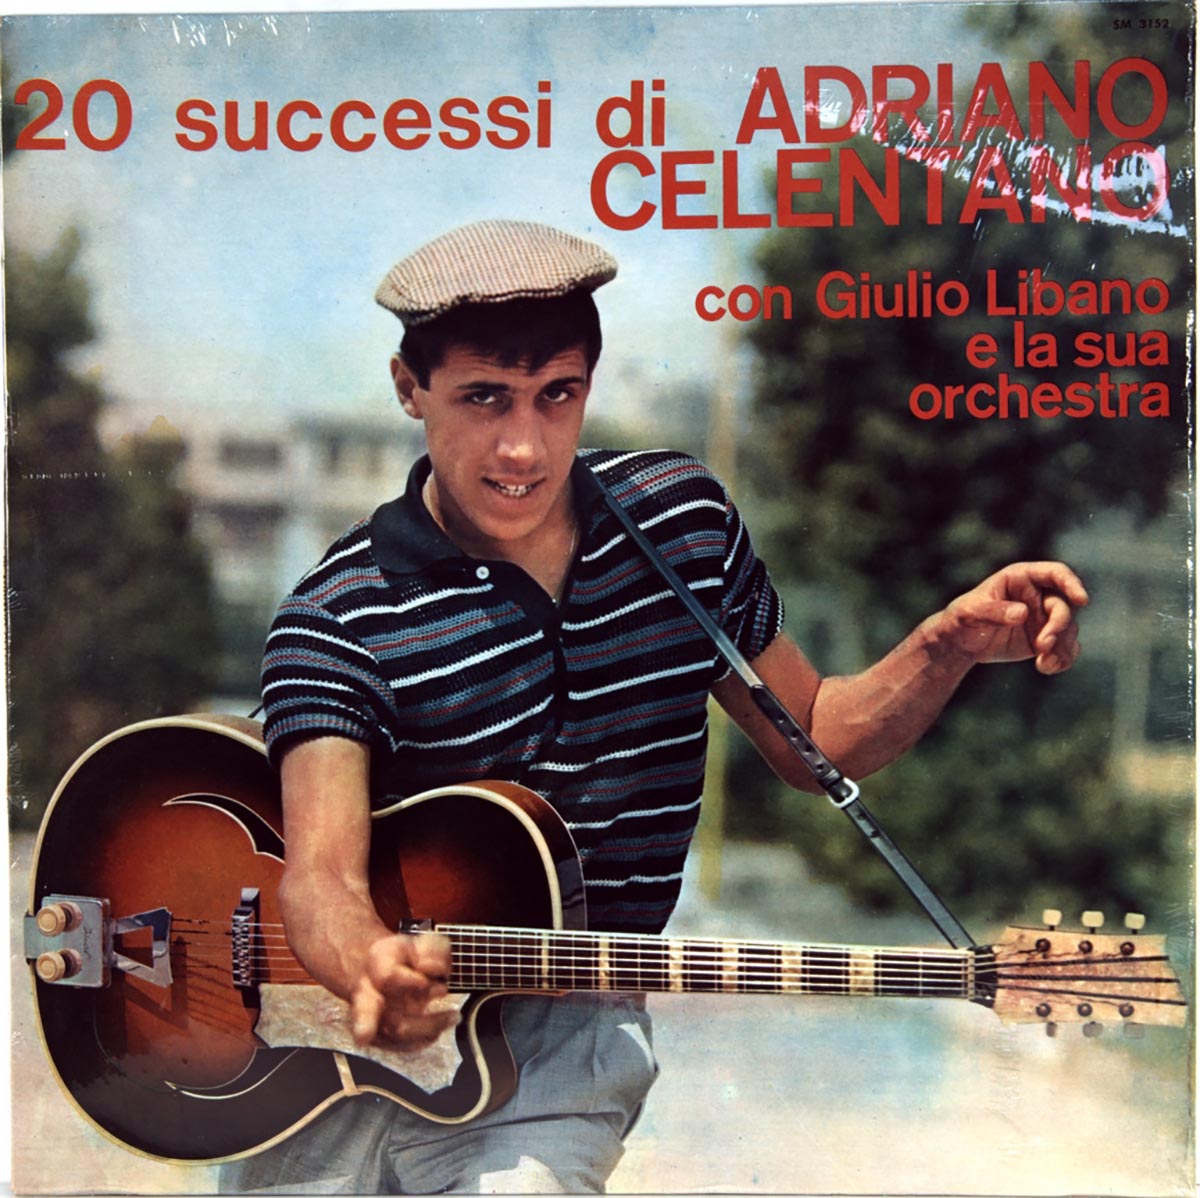 Cover of the album "Adriano Celentano Con Giulio Libano E La Sua Orchestra" (1960)